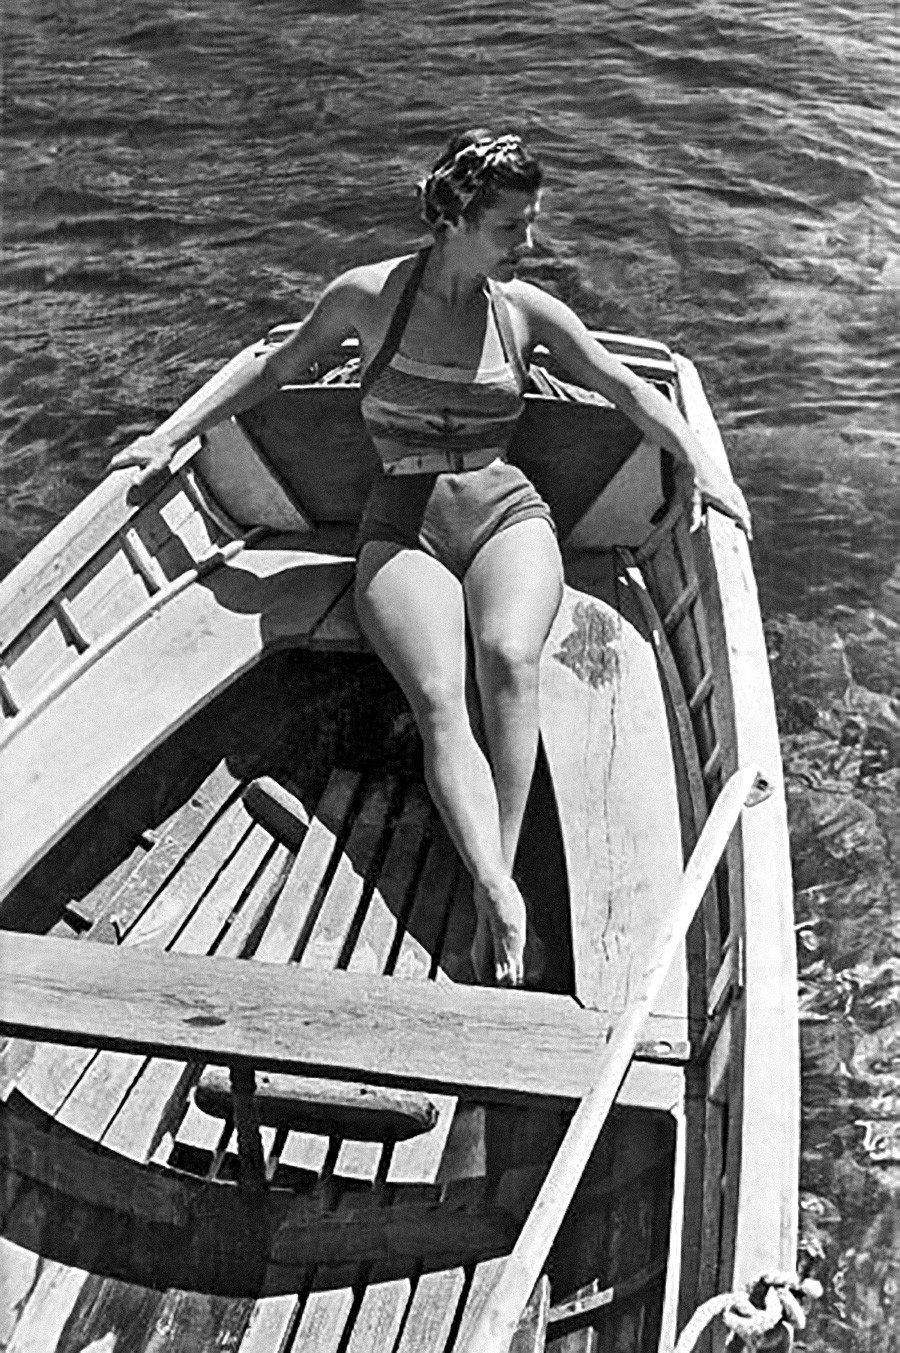 Femme posant sur un bateau, 1946

